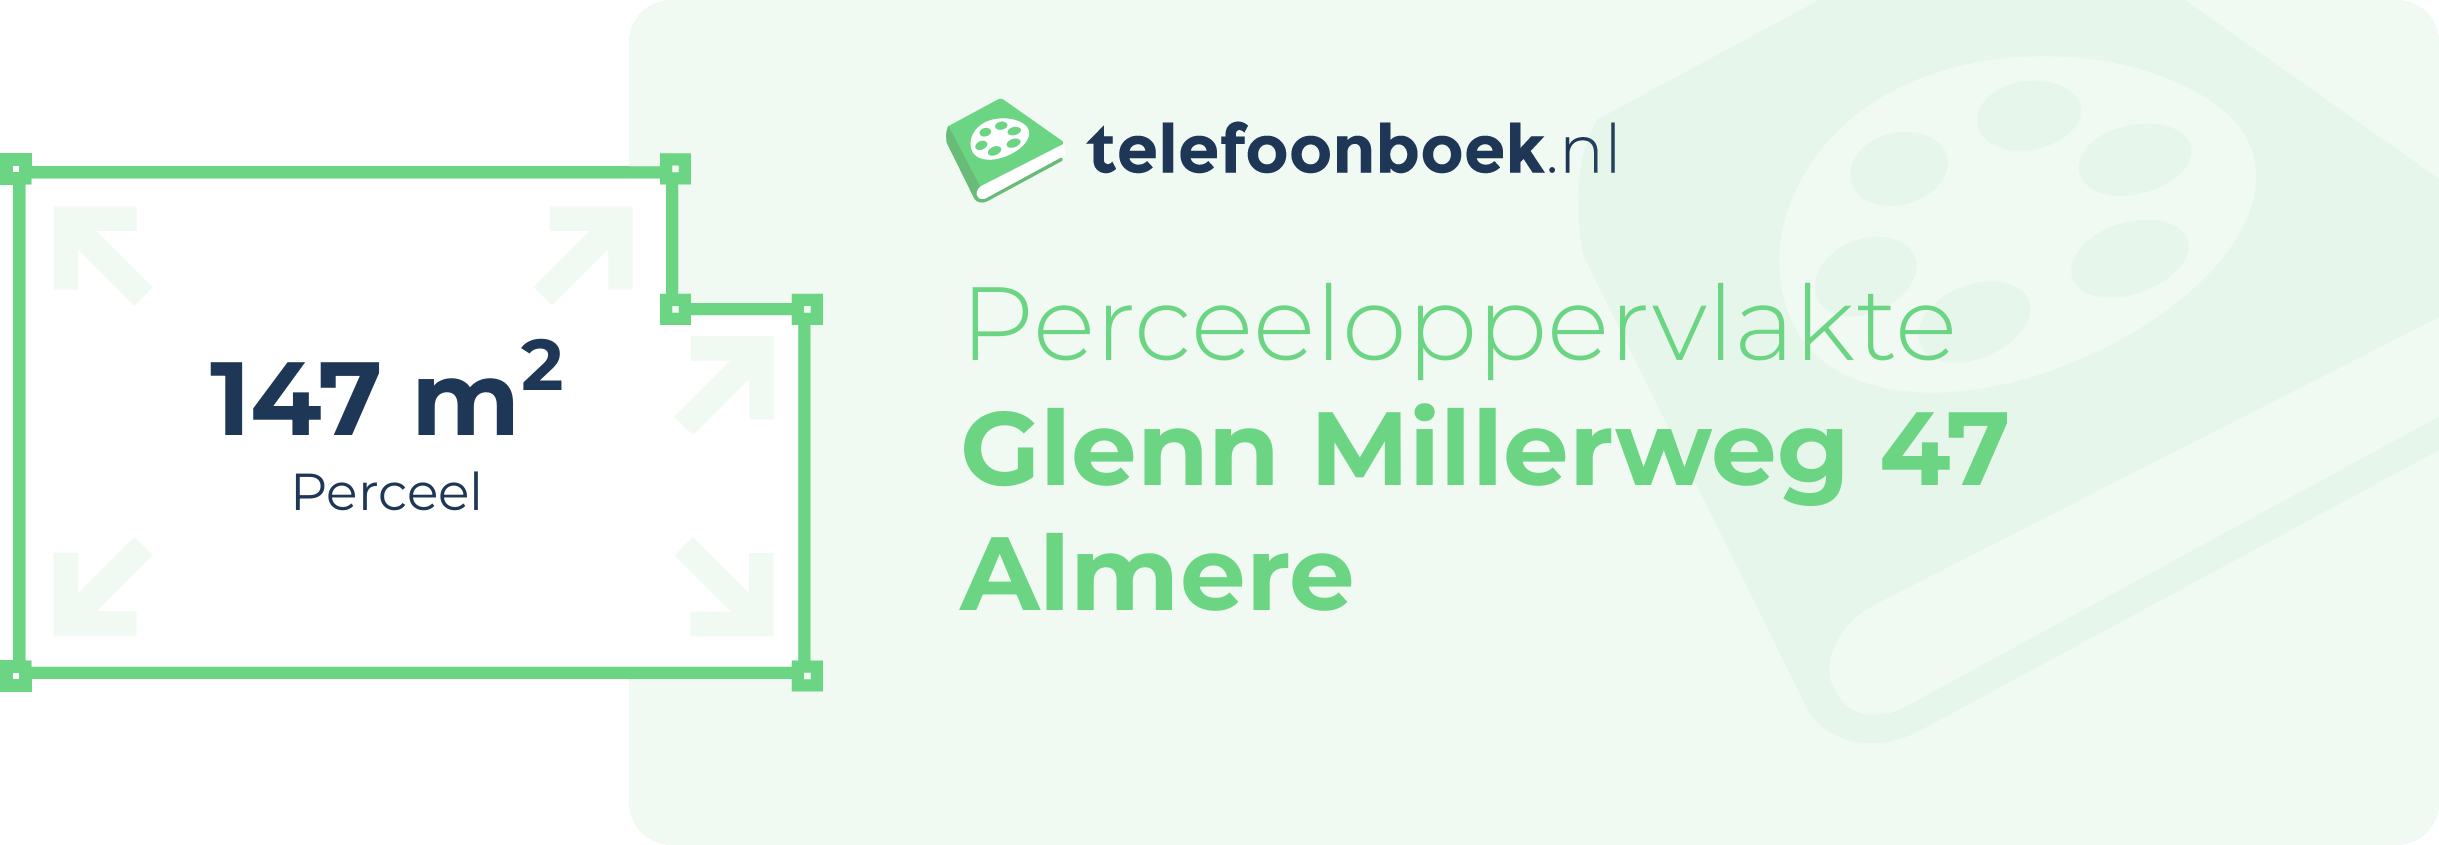 Perceeloppervlakte Glenn Millerweg 47 Almere